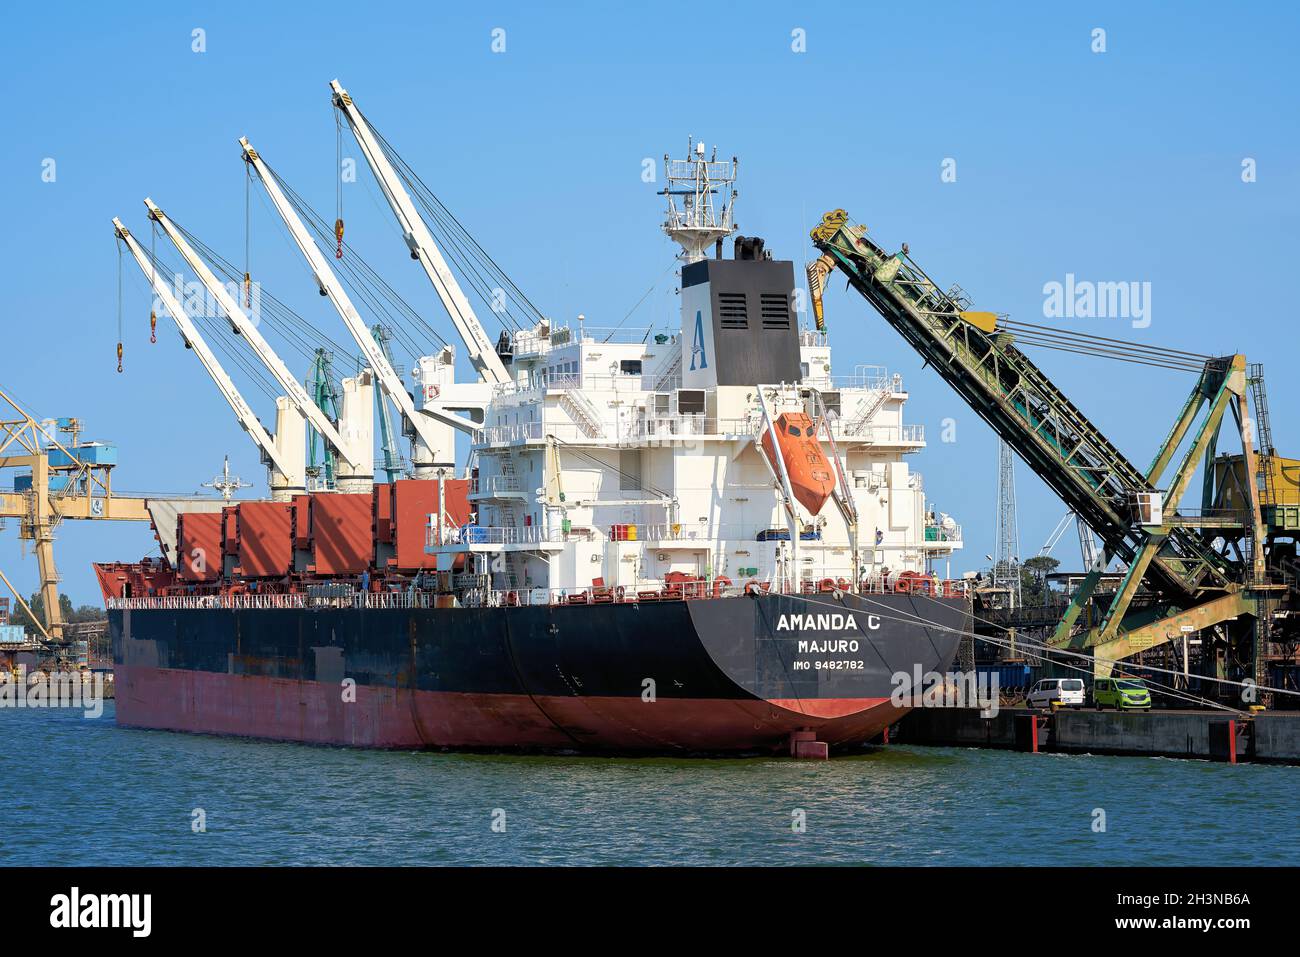 La compañía de transporte a granel Amanda C en el puerto de Swinoujscie En la costa báltica polaca Foto de stock